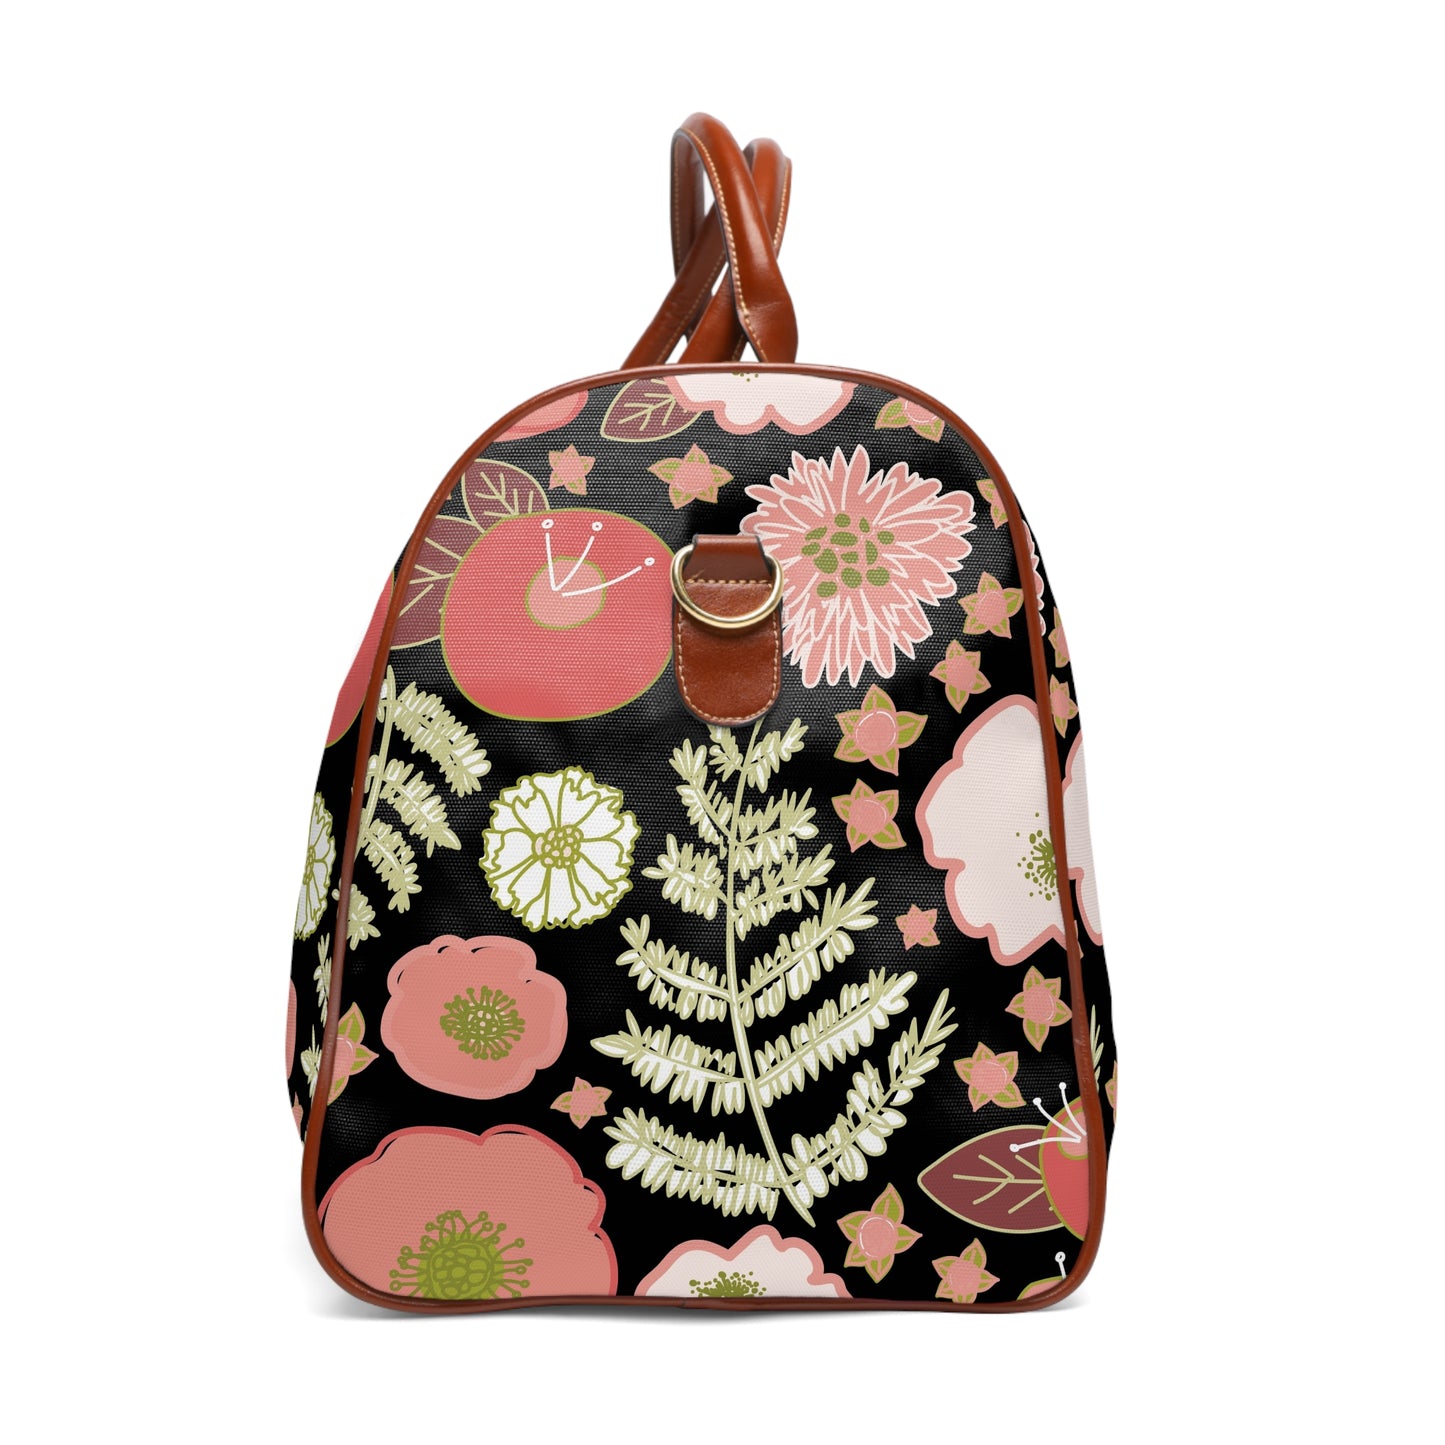 Coral Flowers on Black Waterproof Travel Bag